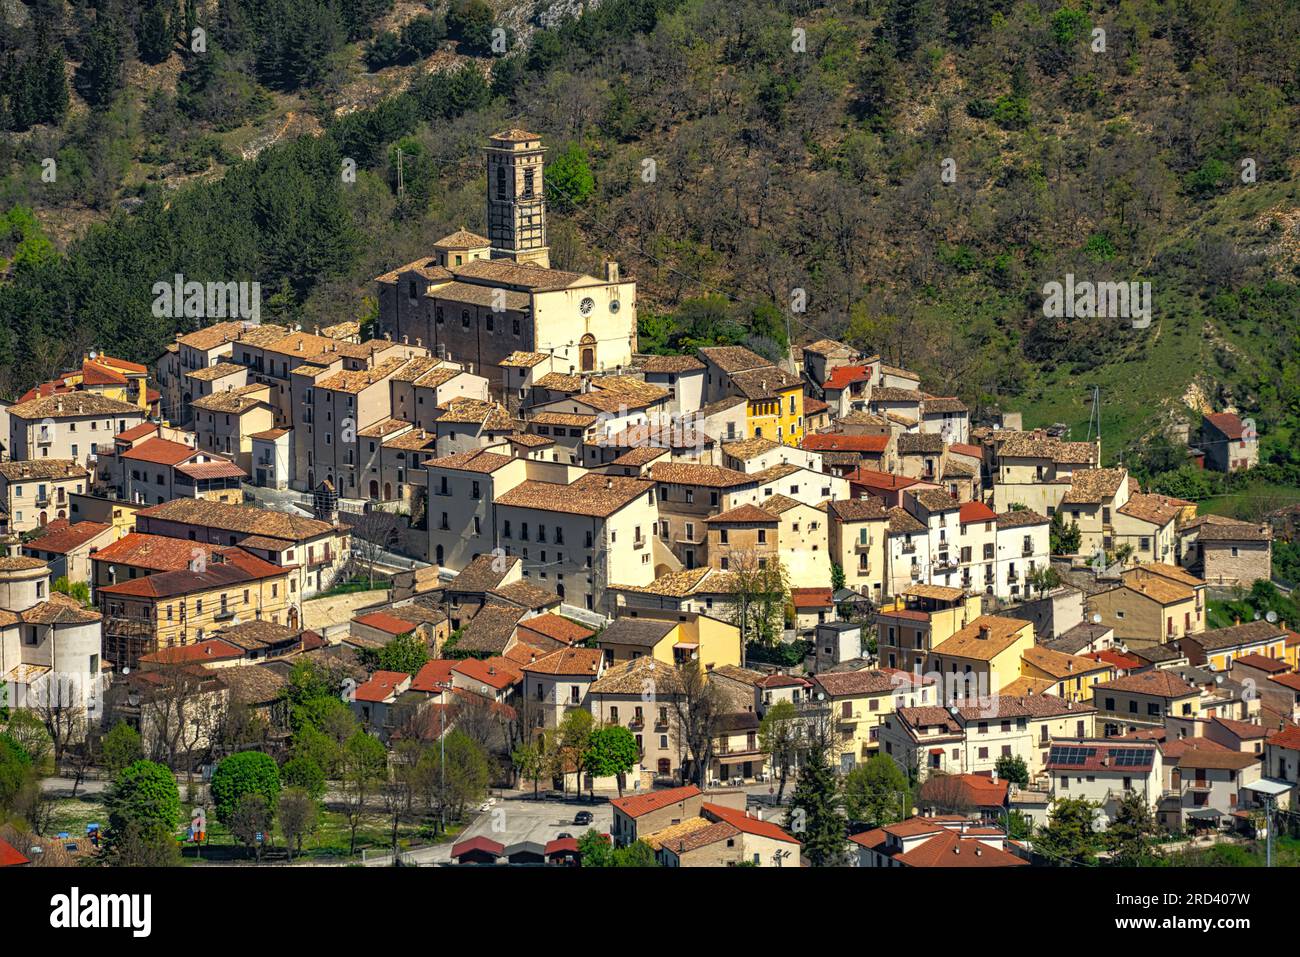 Le petit village de Goriano Sicoli placé parmi les montagnes du Parc naturel régional de Sirente Velino. Banque D'Images